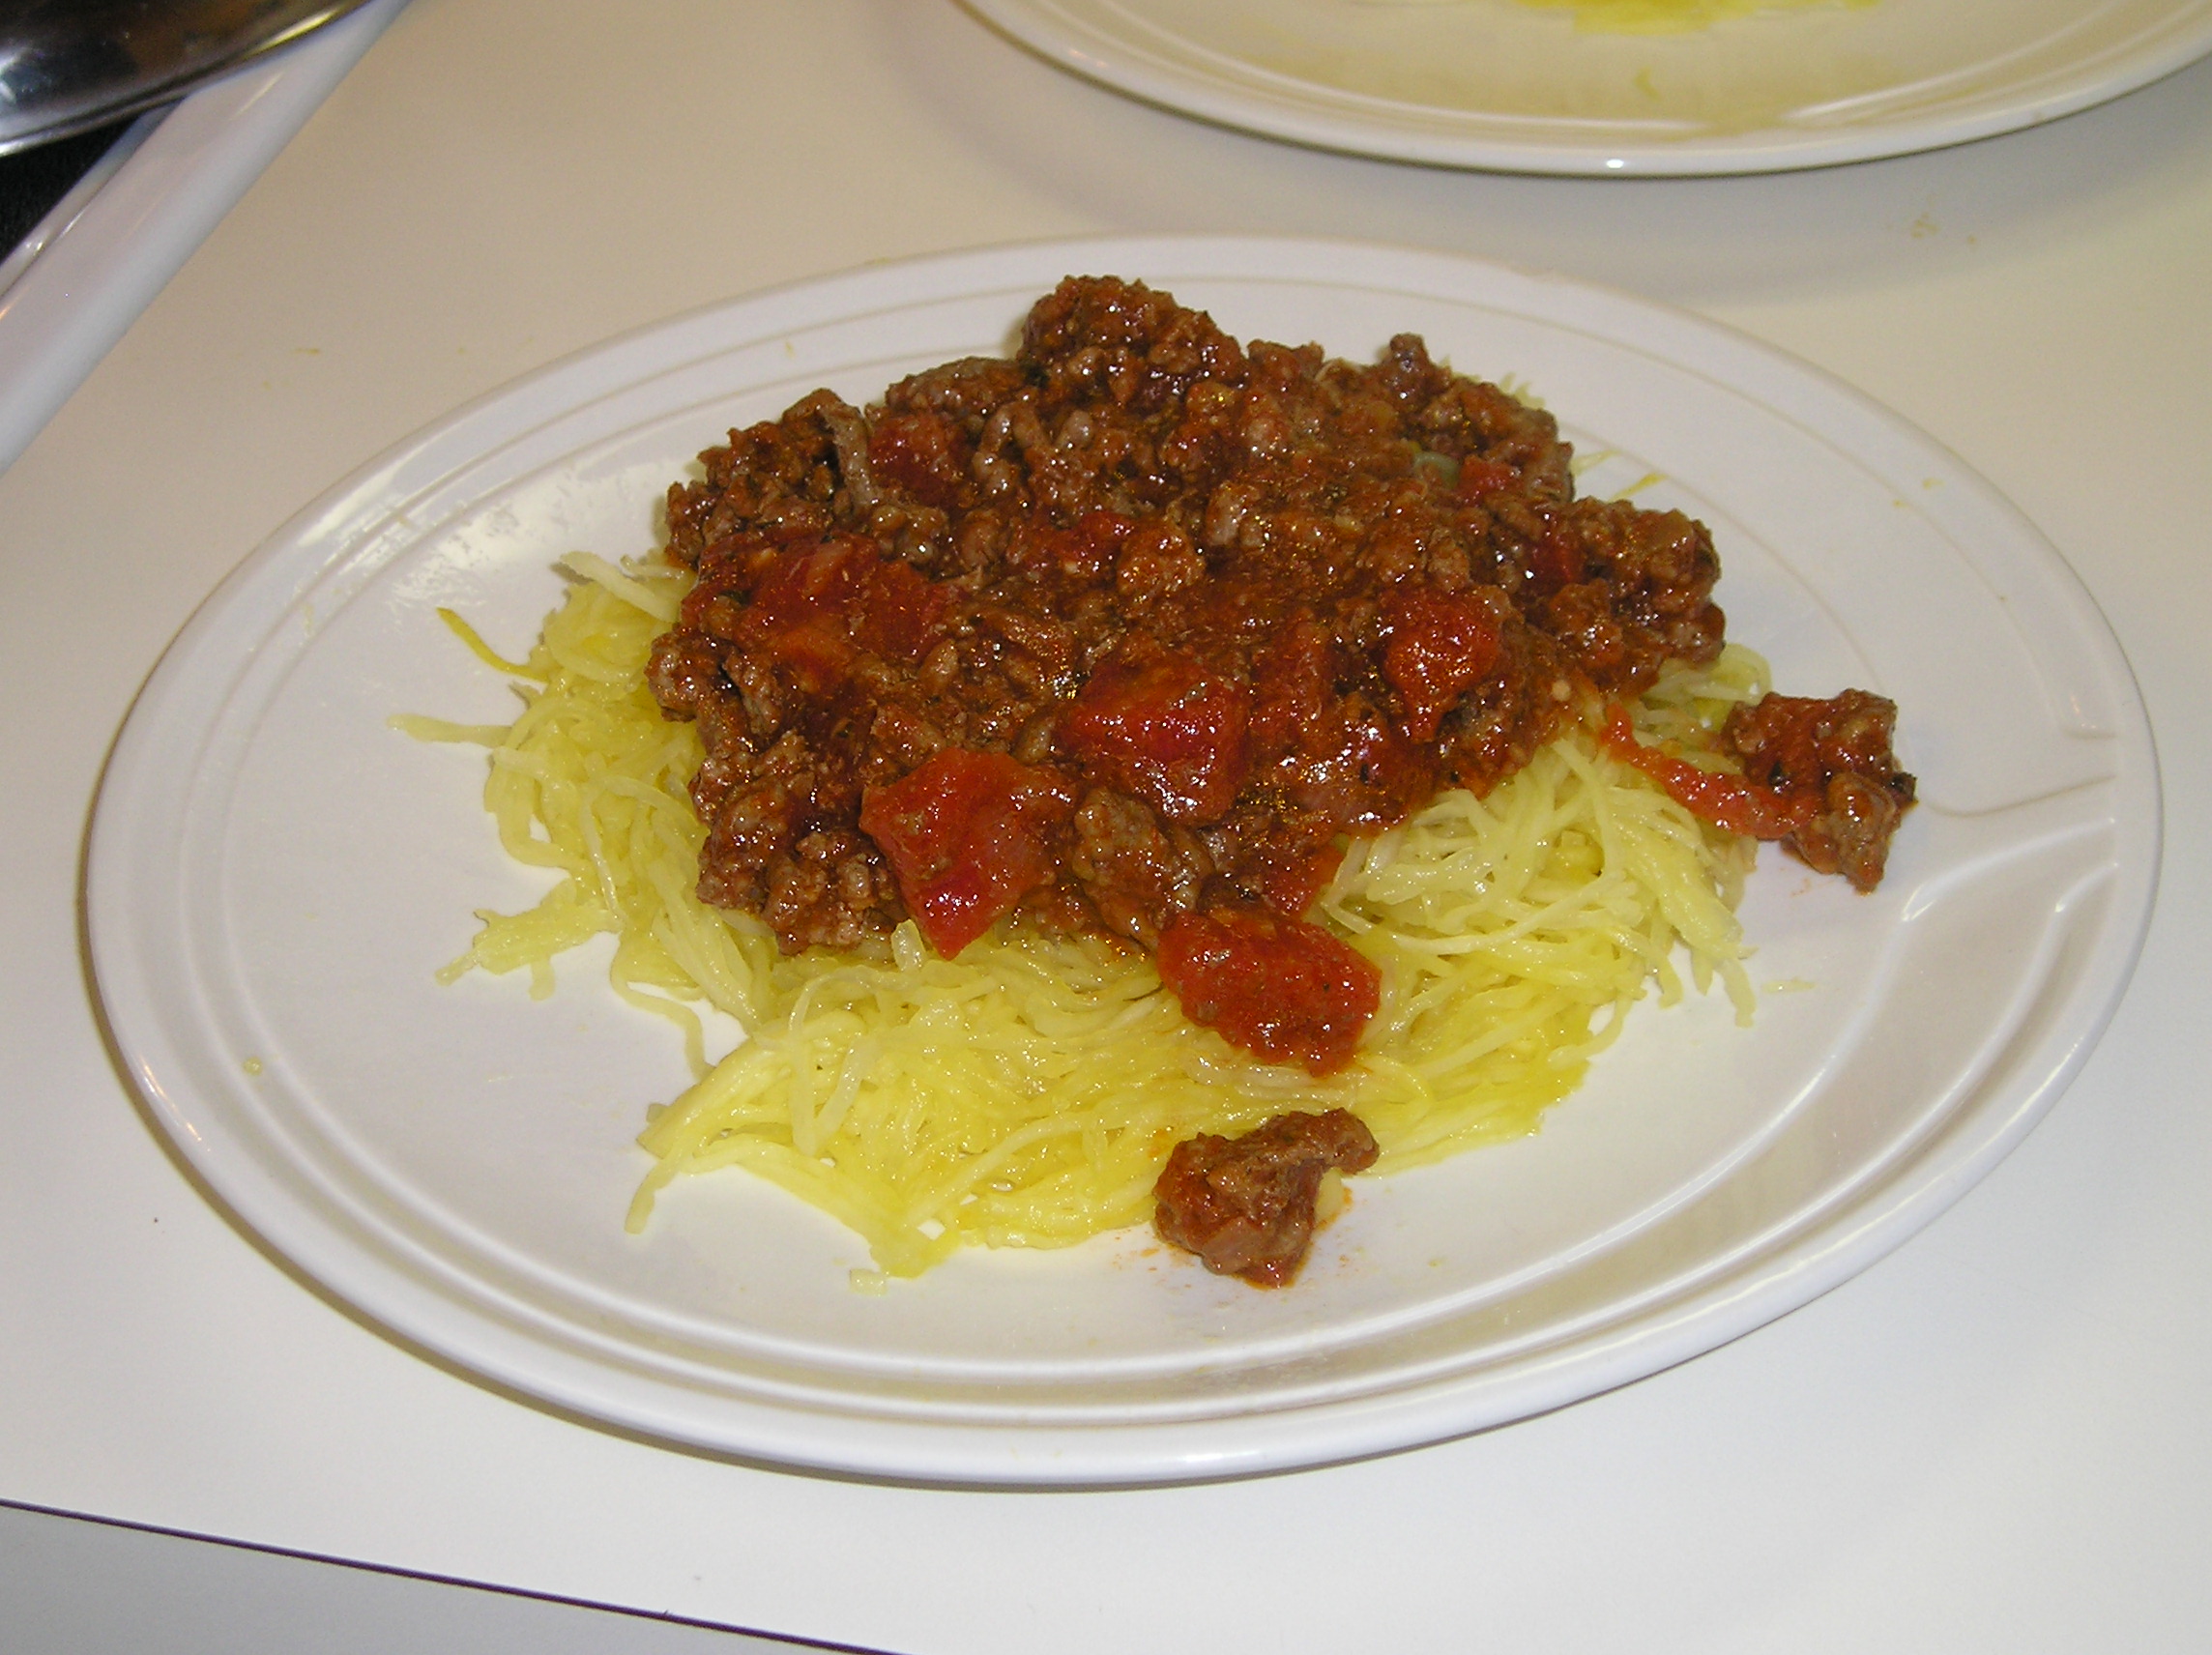 Meaty spaghetti sauce over spaghetti squash